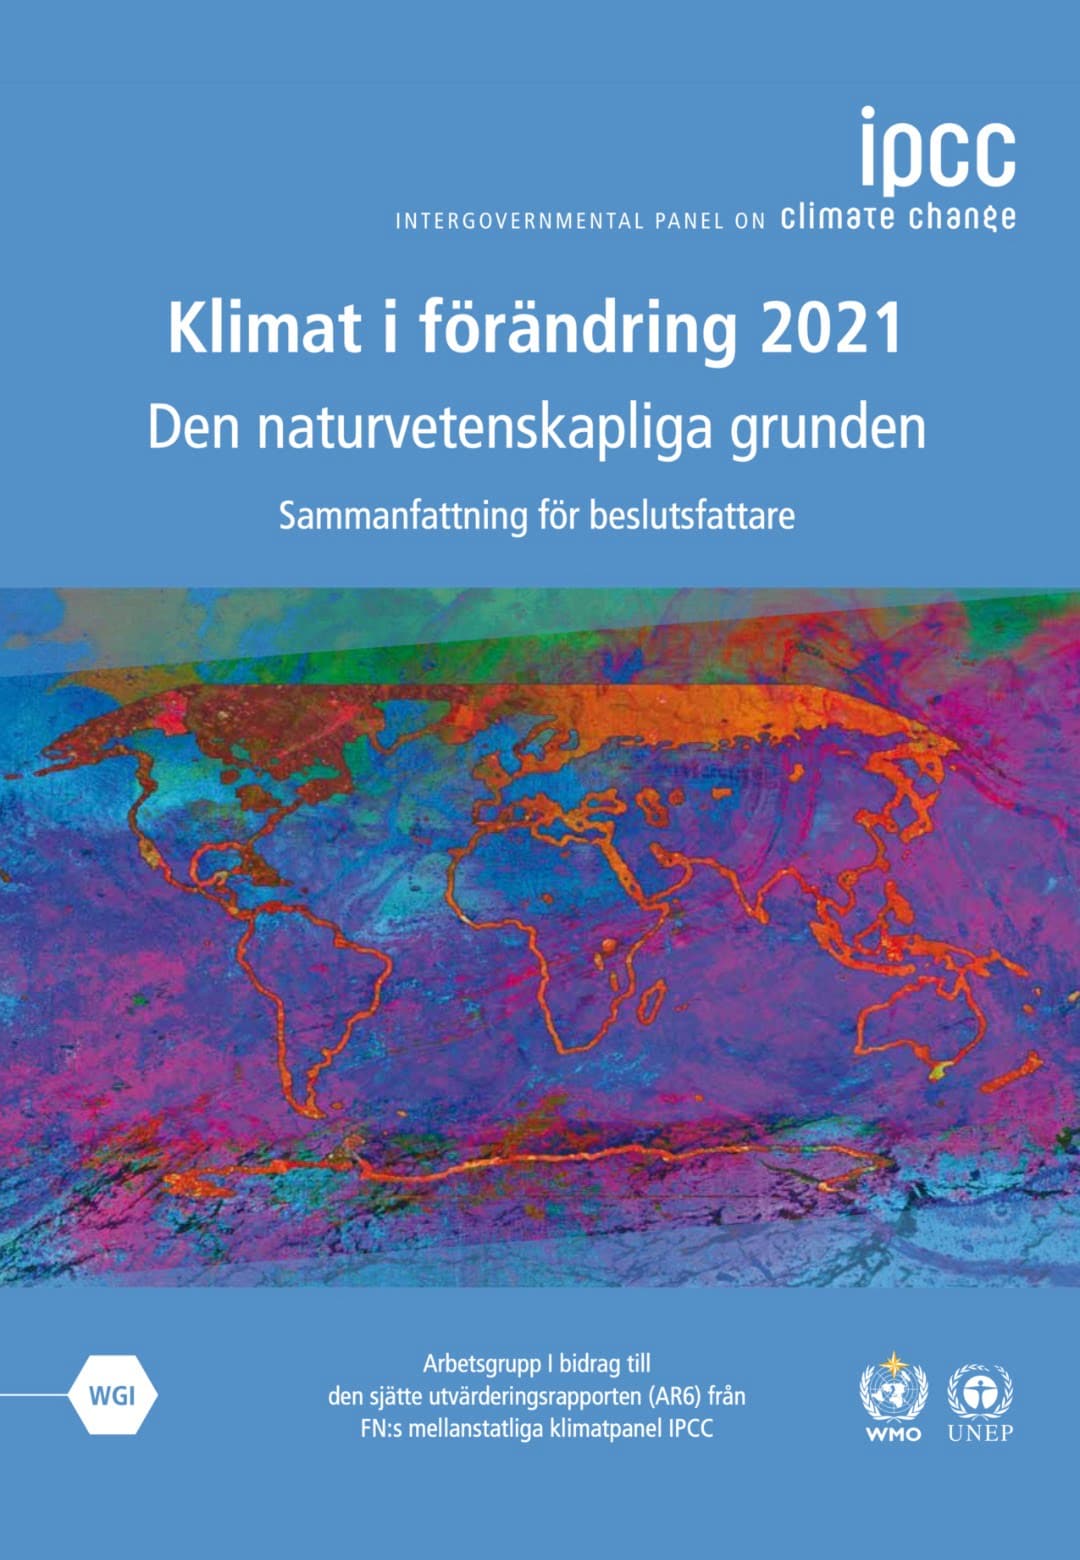 thefuture, IPCC_AR6_WGI_Svensk_1